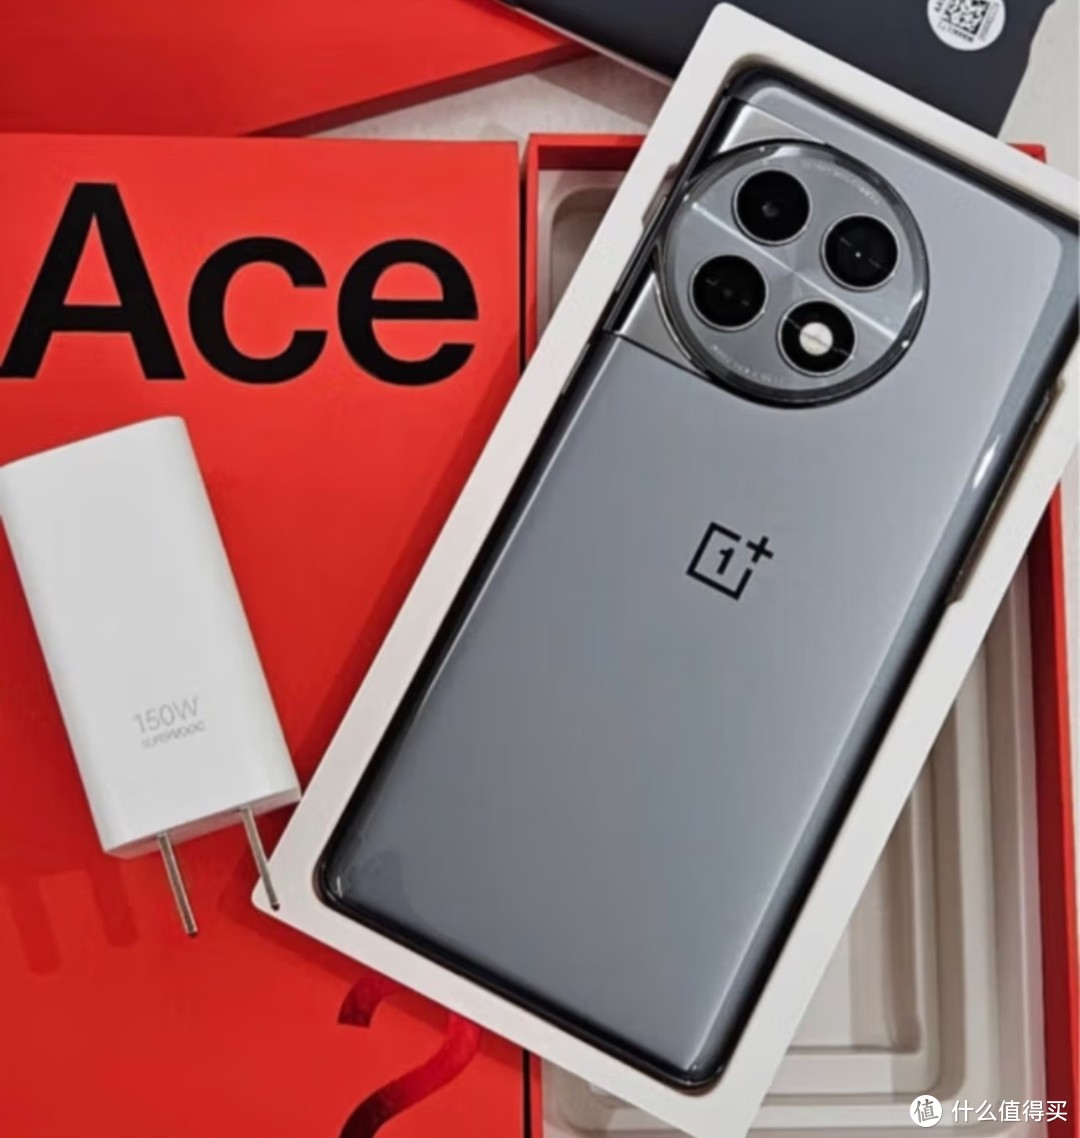  一加 Ace 2 Pro 16GB+512GB 钛空灰 高通第二代骁龙 8 旗舰芯片 长寿版 150W 超级闪充 5G游戏性能手机